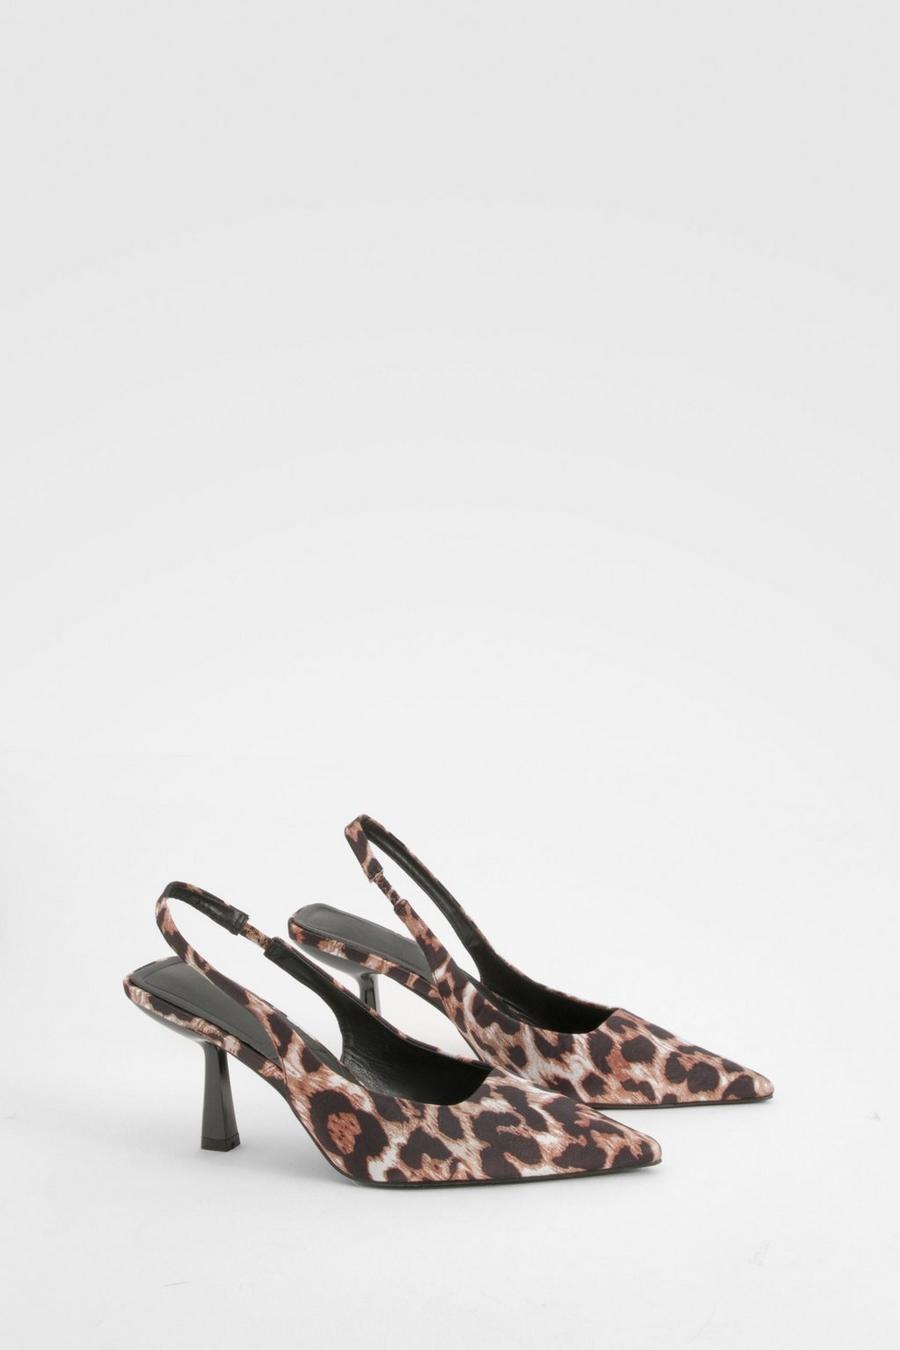 Chaussures léopard avec bride à la cheville, Leopard